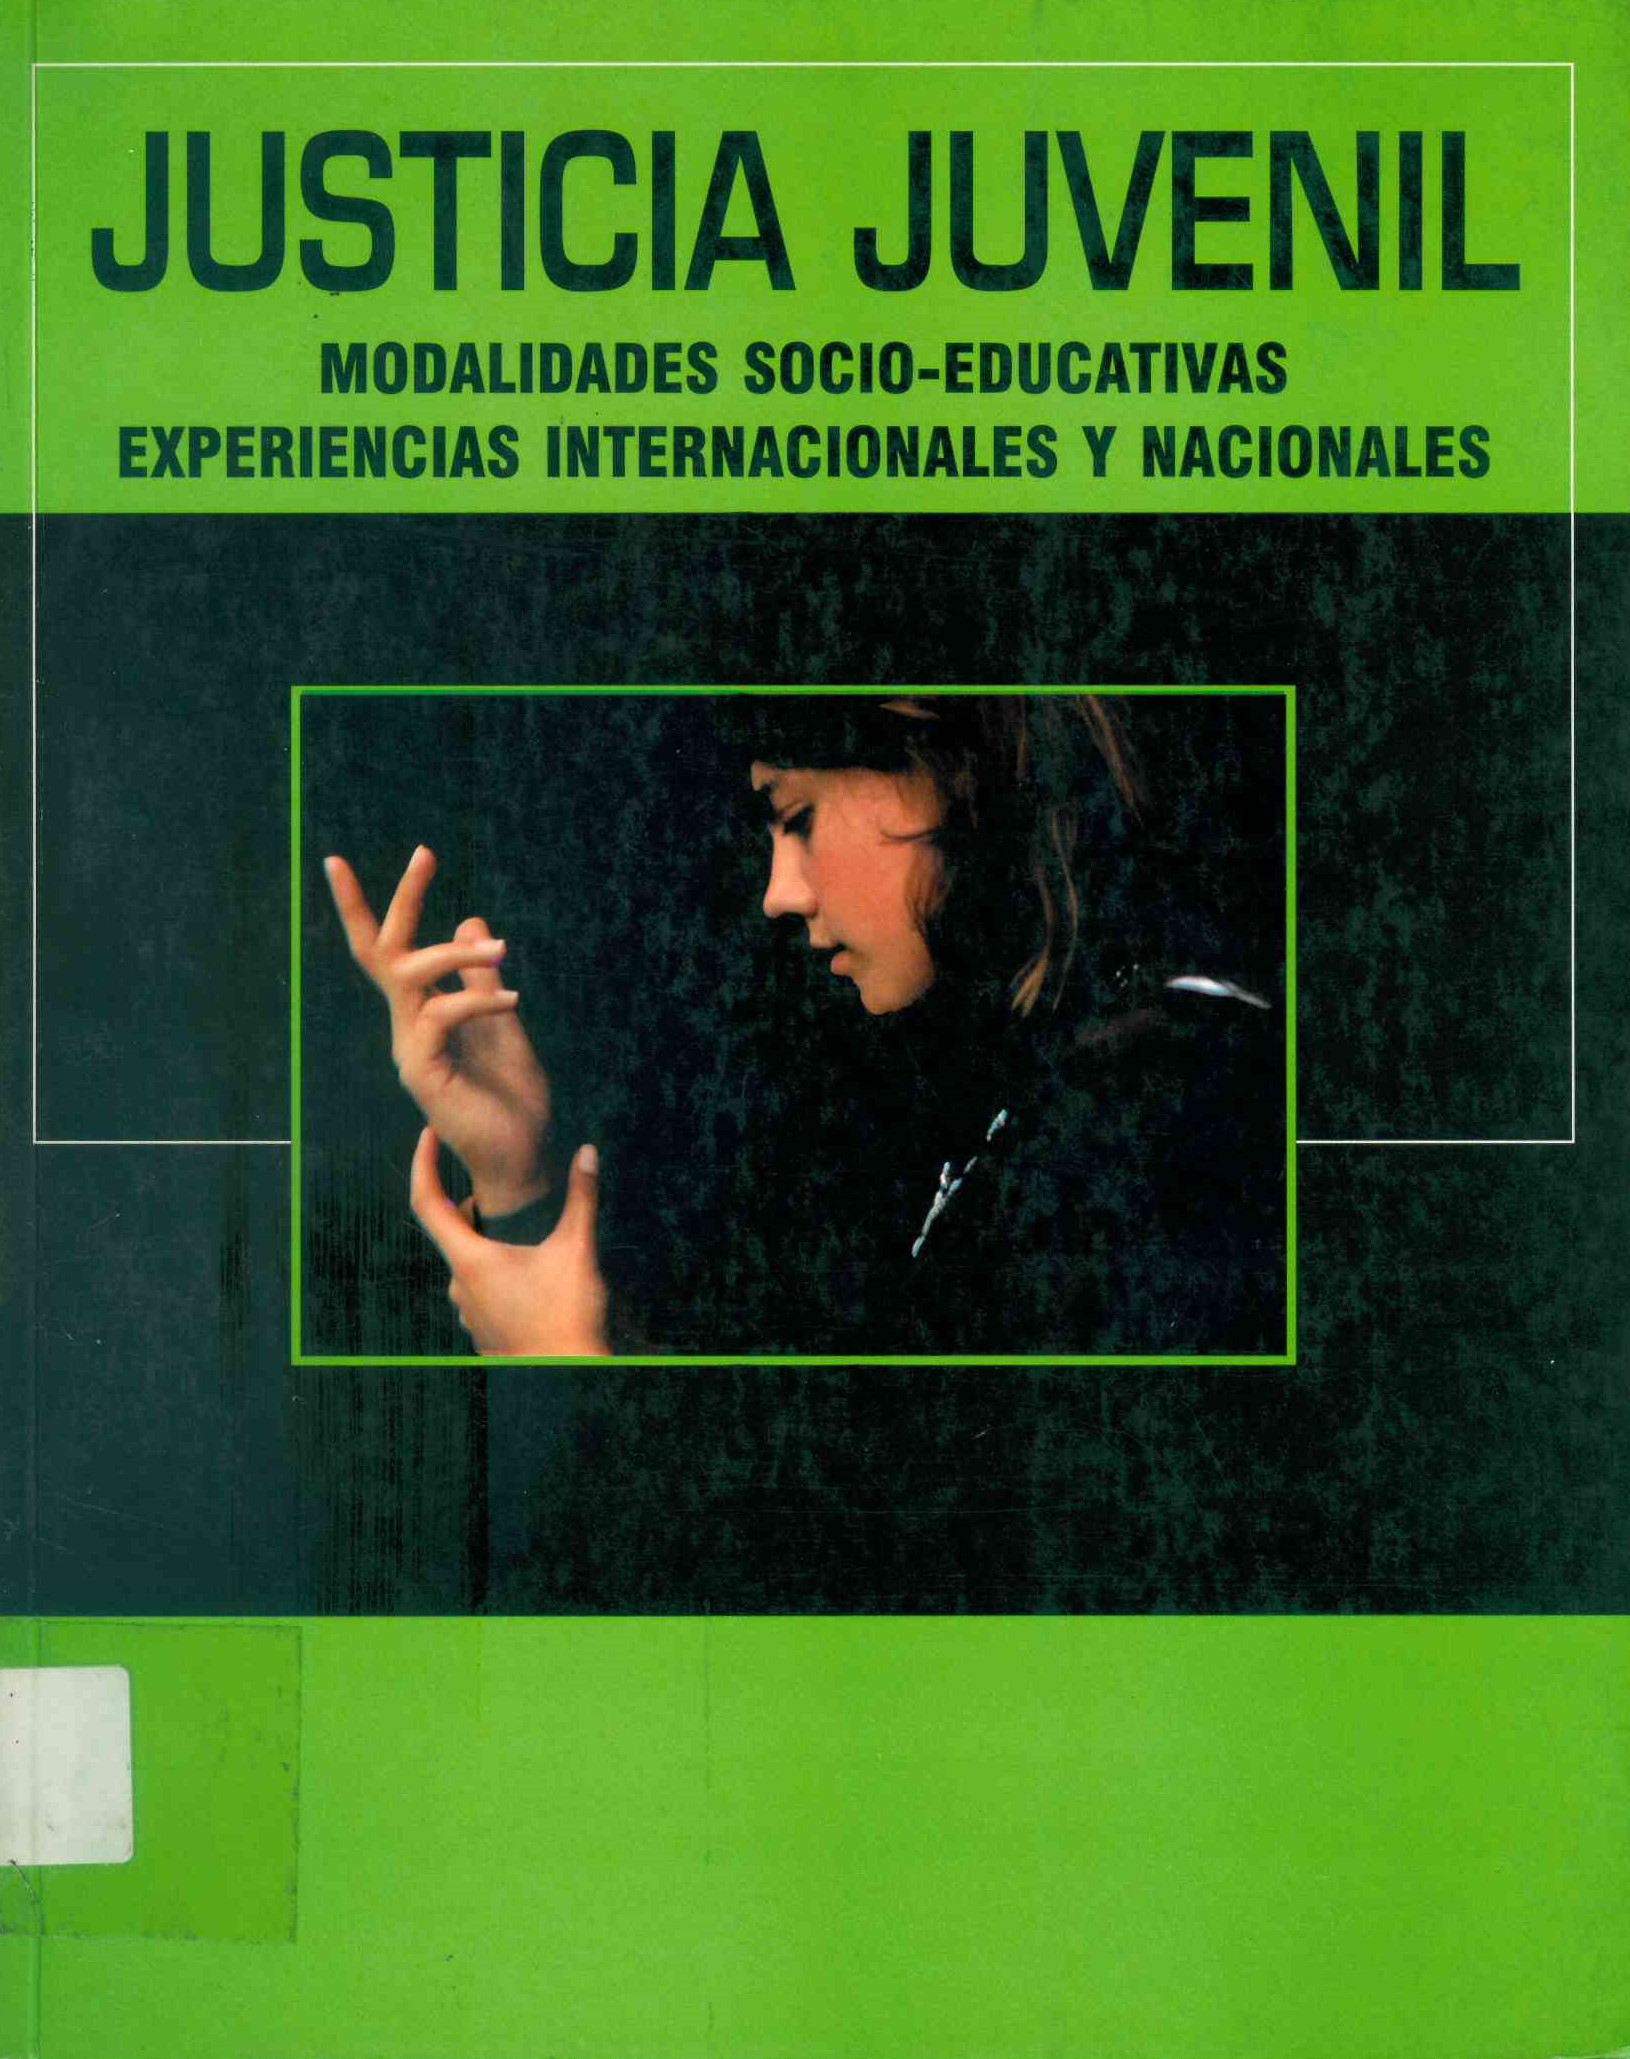 Justicia juvenil modalidades socio-educativas experiencias internacionales y nacionales